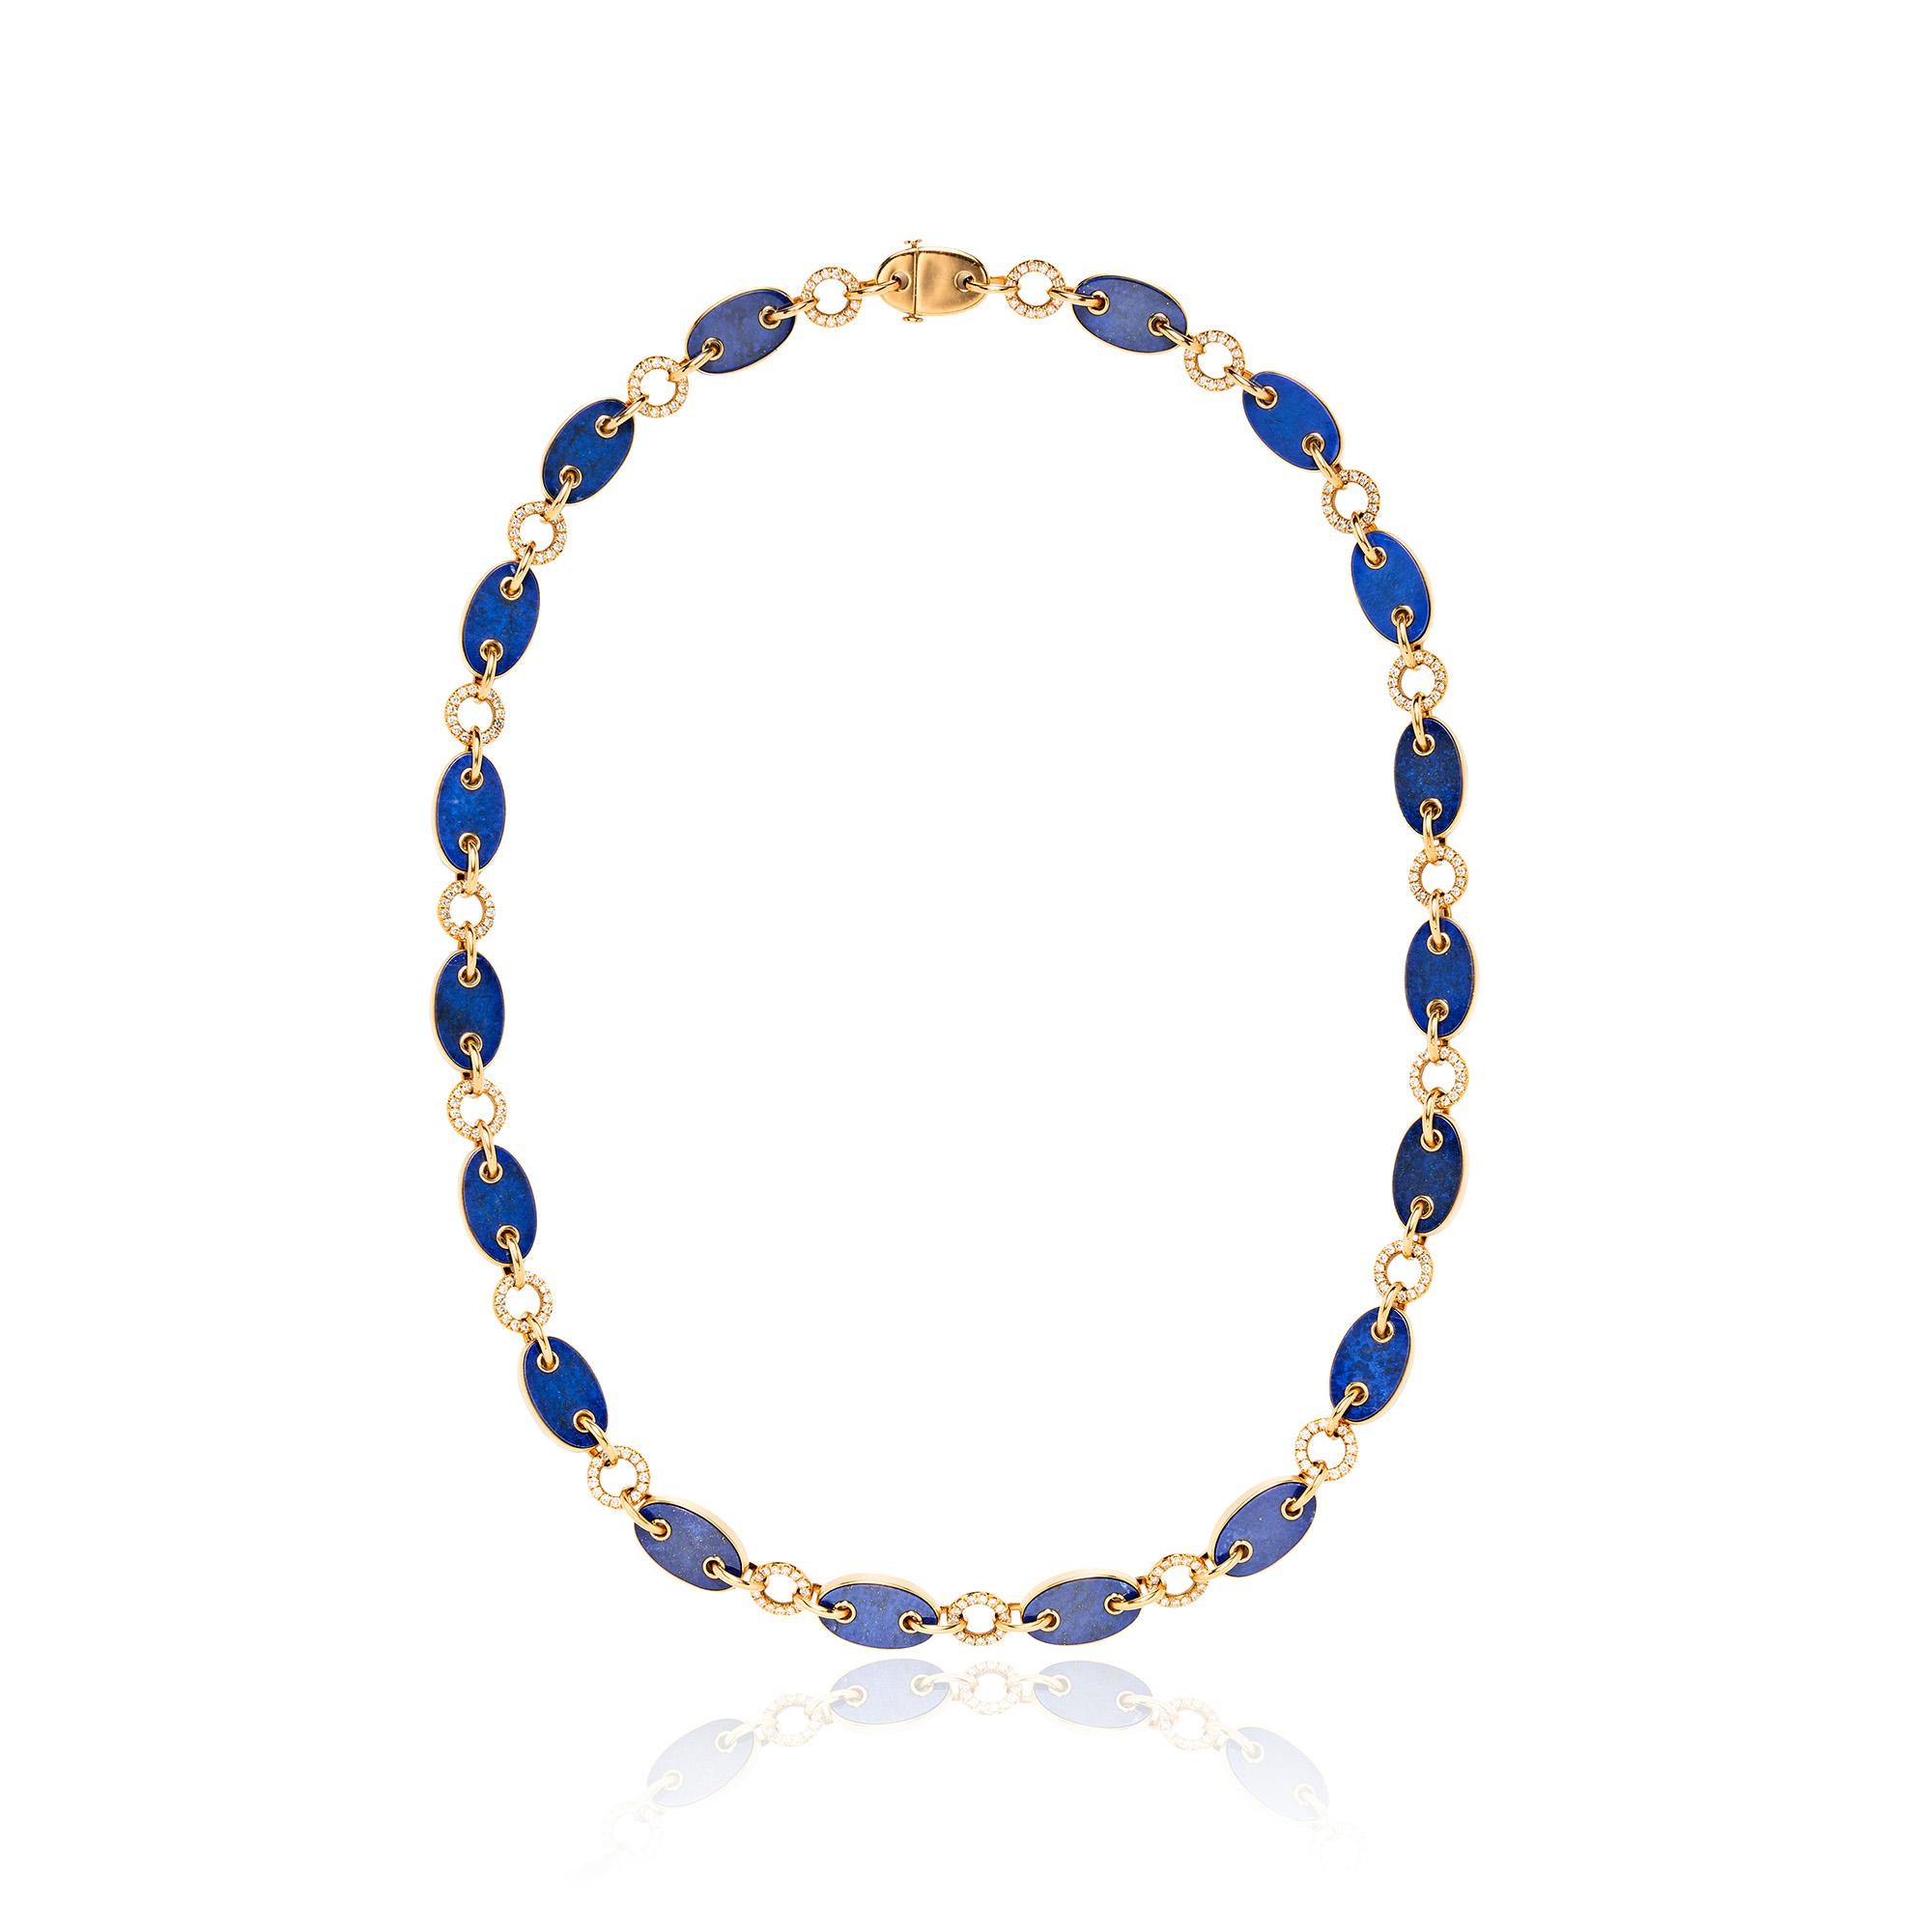 Réputés pour leur savoir-faire lapidaire et leur expertise, les frères Aletto ont réalisé ce collier en or composé de maillons marins sertis de lapis-lazuli, reliés par des maillons ronds en or poli pavés de diamants ronds.

Environ 31